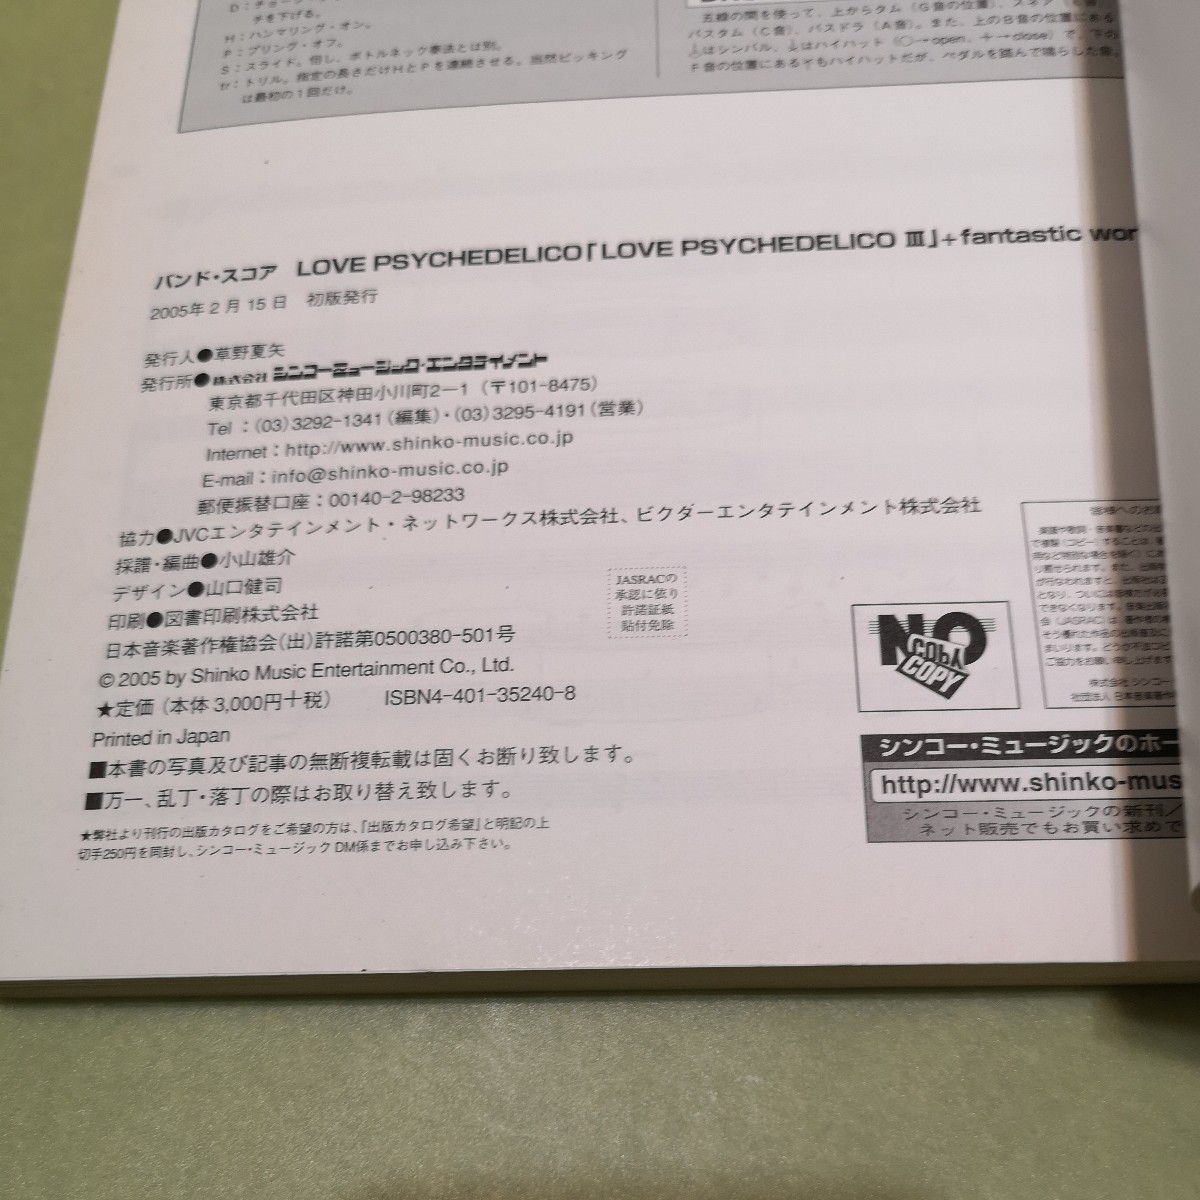 ◎ラブサイケデリコ/LOVE PSYCHEDELICO 3+fantastic world (バンド・スコア)